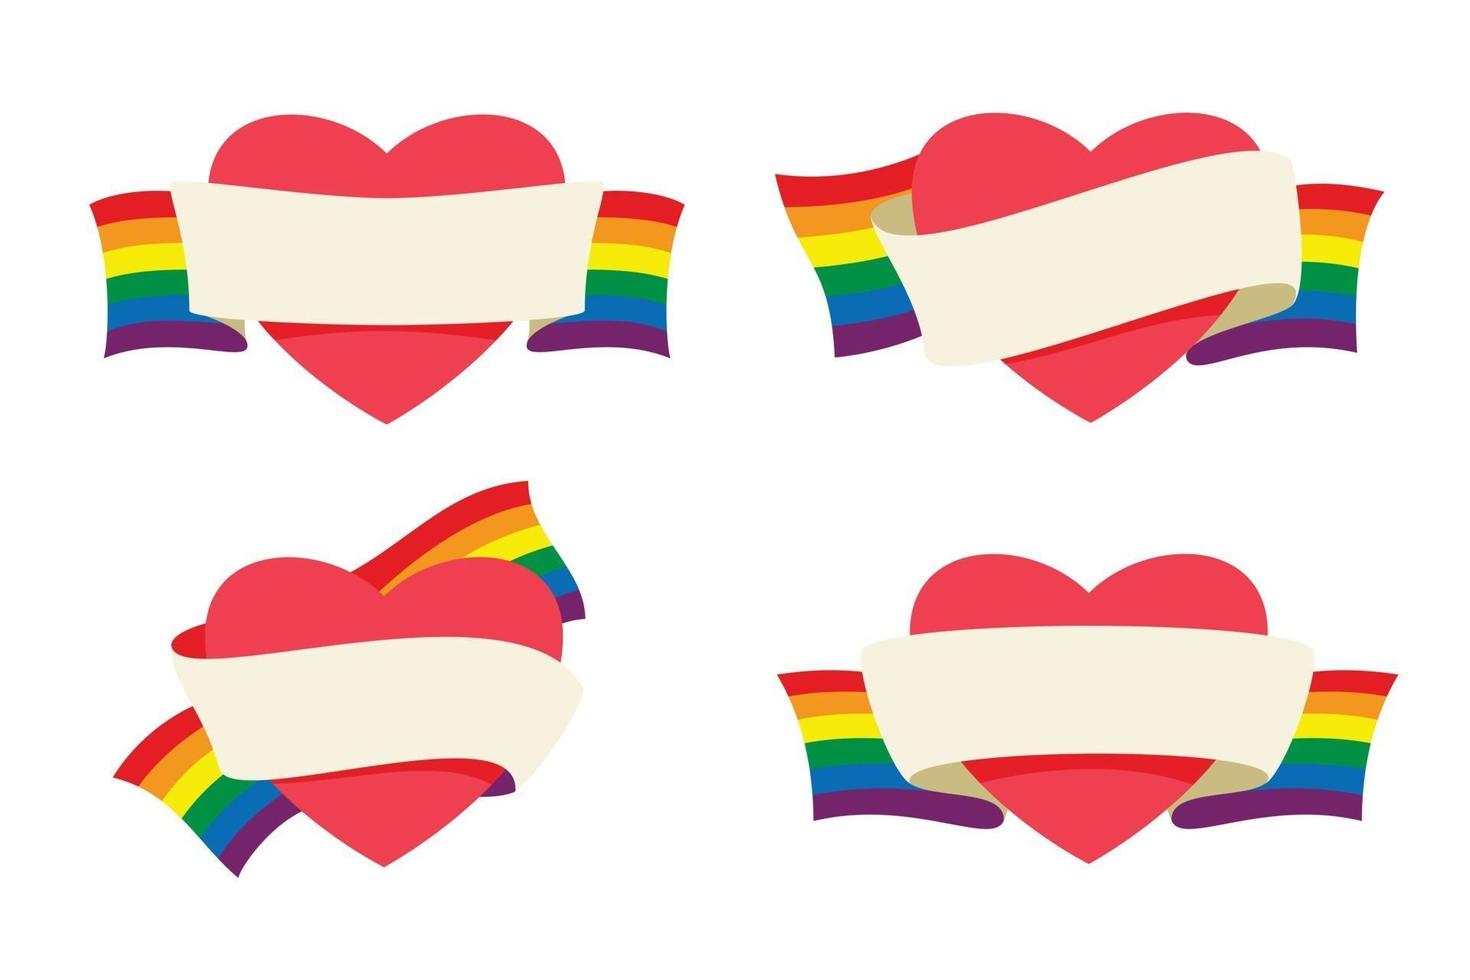 cuatro estilos de corazones están envueltos por un banner de cinta con la bandera del arco iris para la actividad lgbt. vector